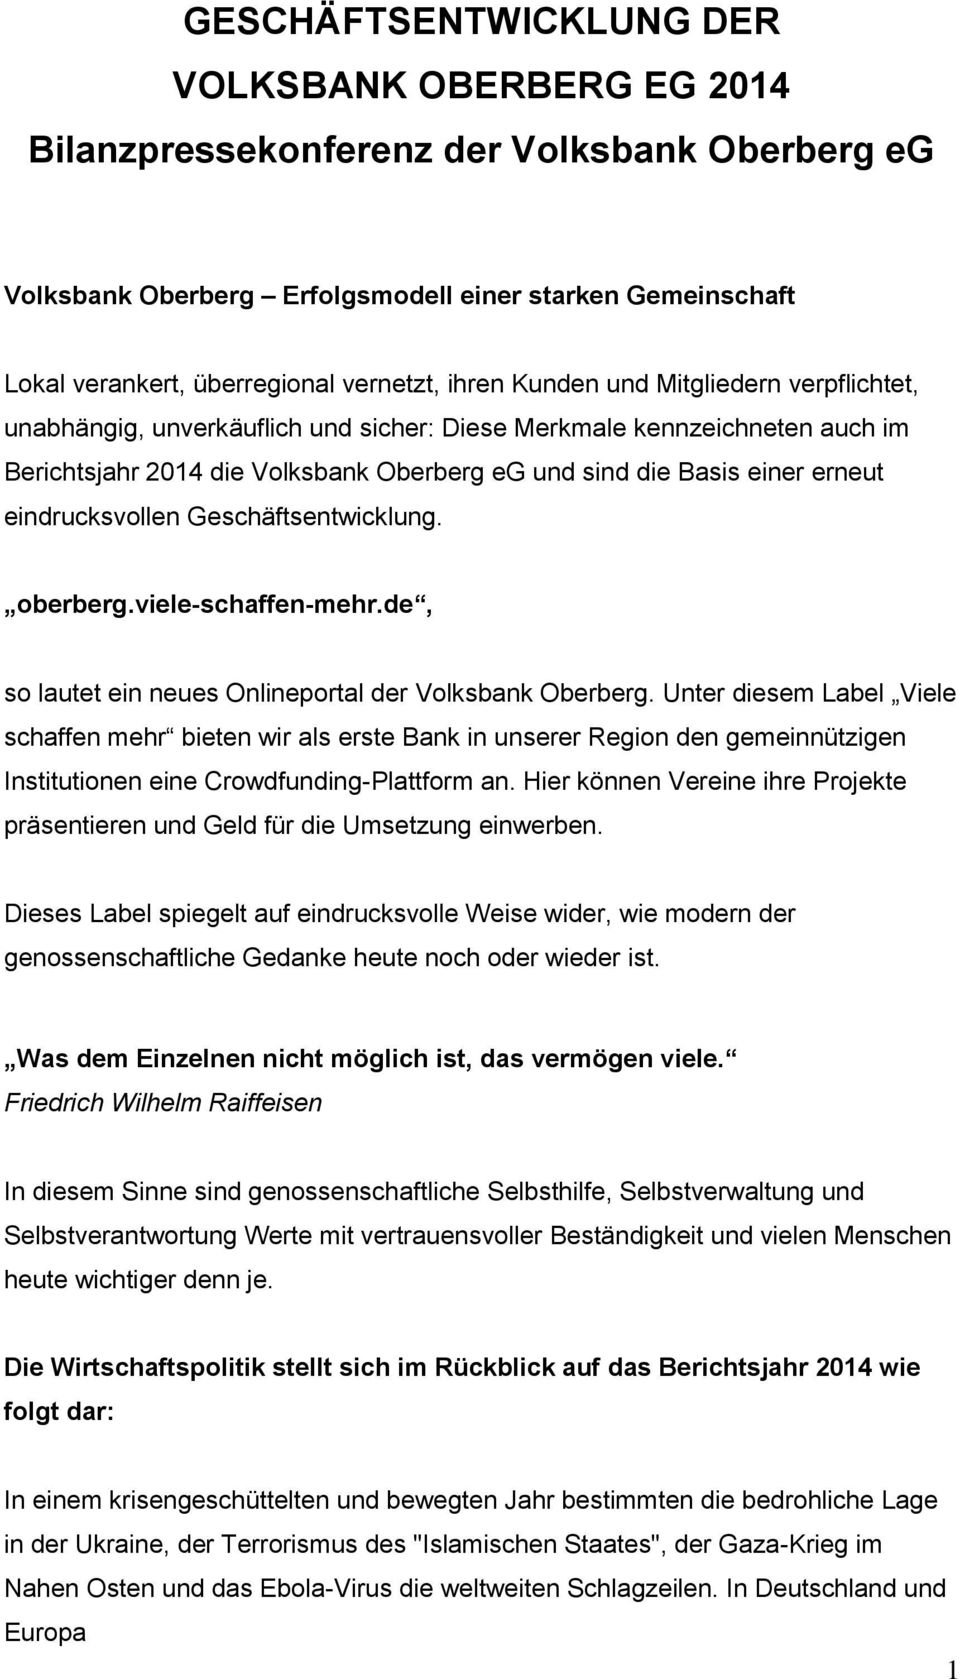 eindrucksvollen Geschäftsentwicklung. oberberg.viele-schaffen-mehr.de, so lautet ein neues Onlineportal der Volksbank Oberberg.